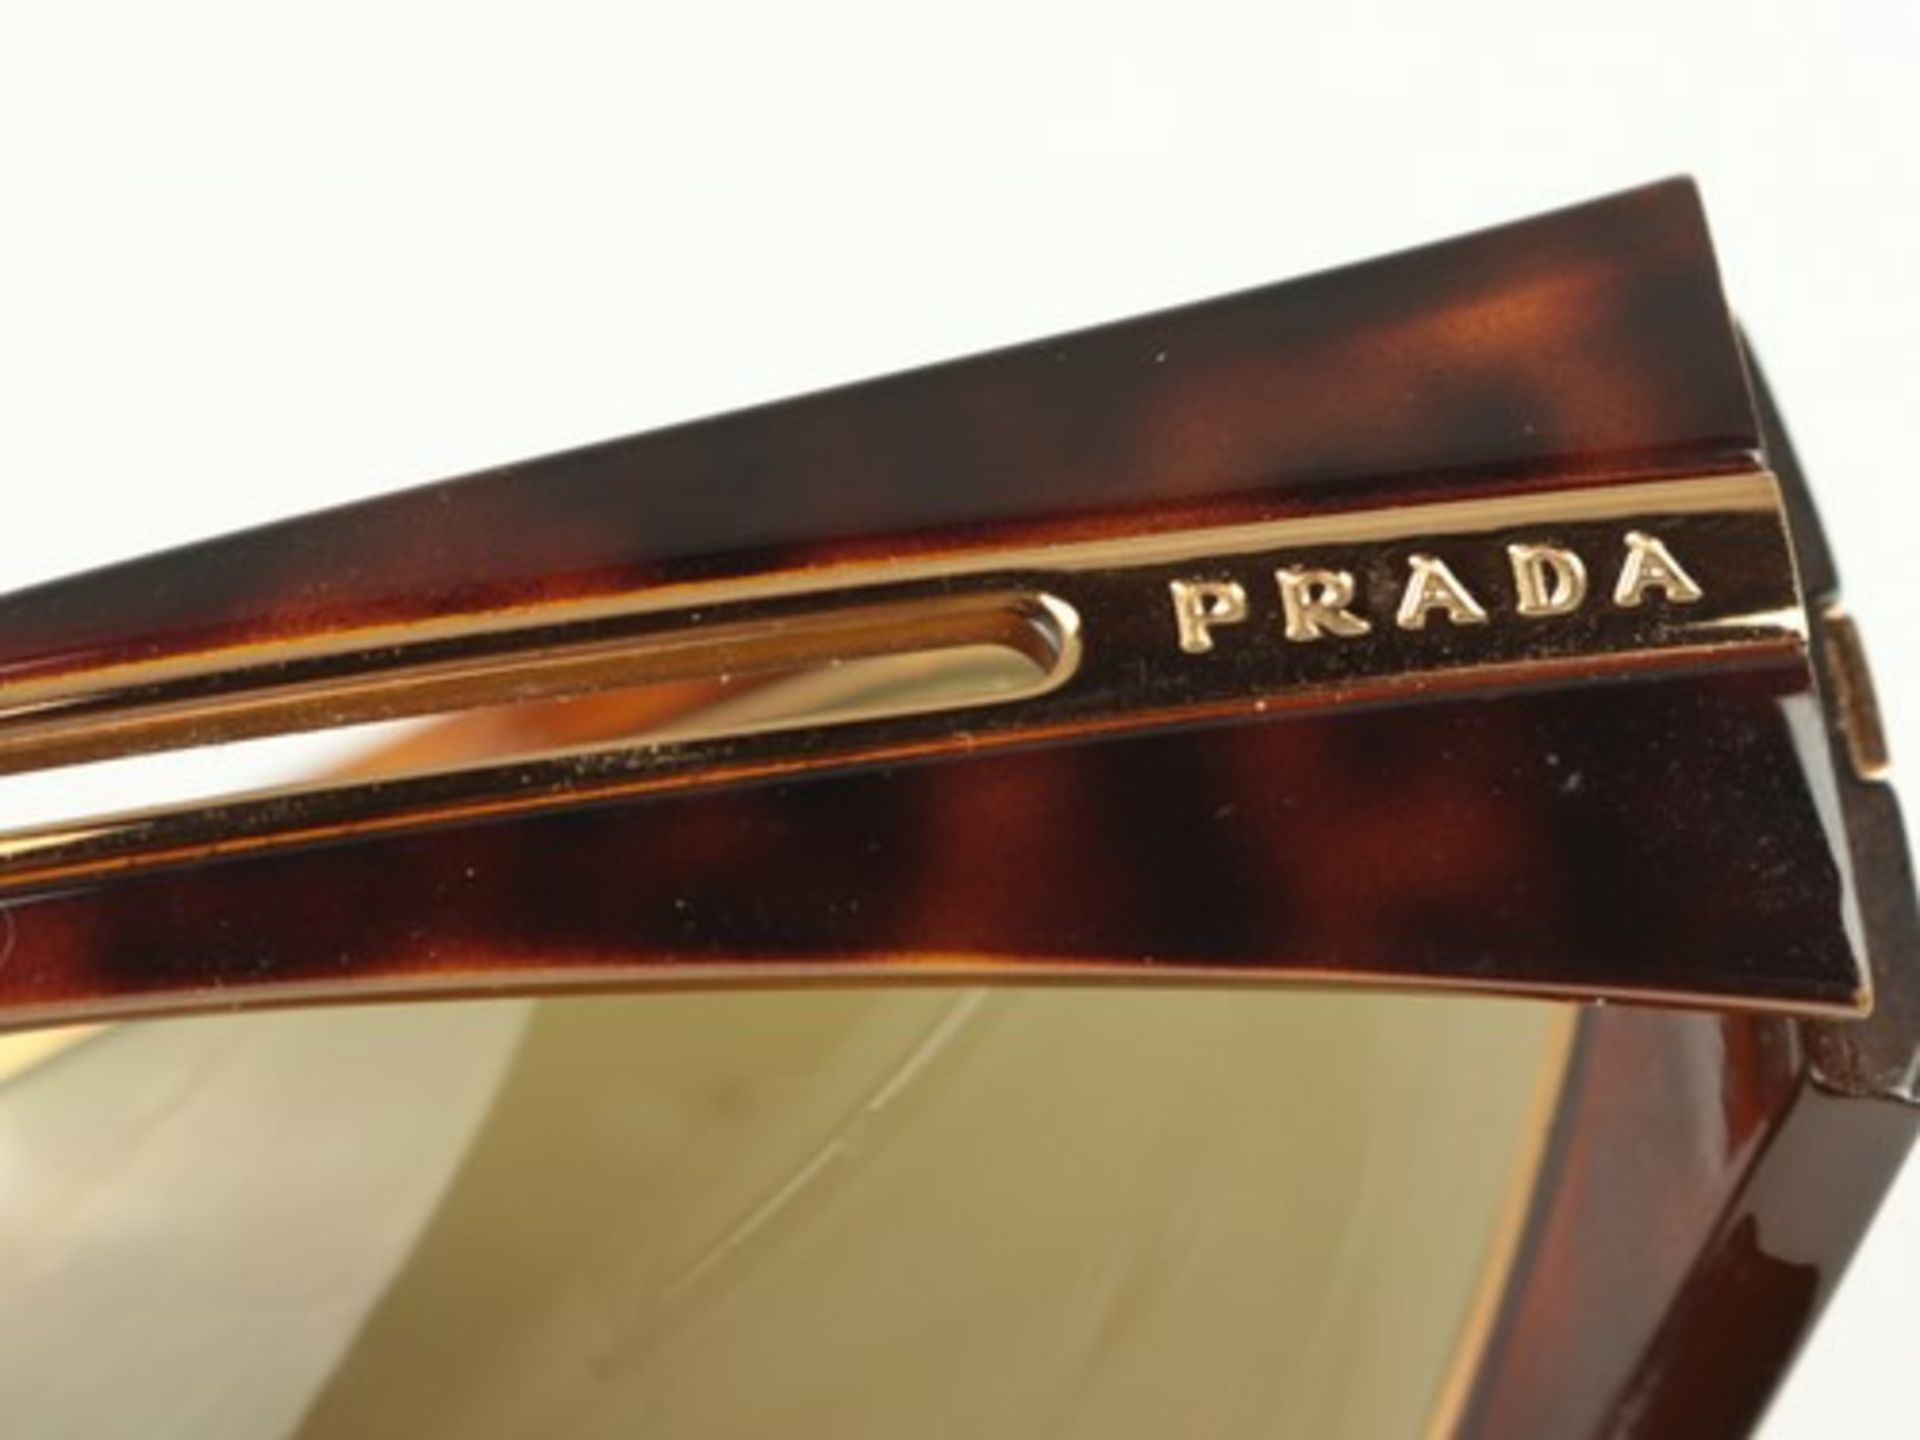 Prada - Sonnenbrilleschildpattfarbener Kunststoff, goldfarbene Zierleiste, verbundene gebogene - Bild 4 aus 5